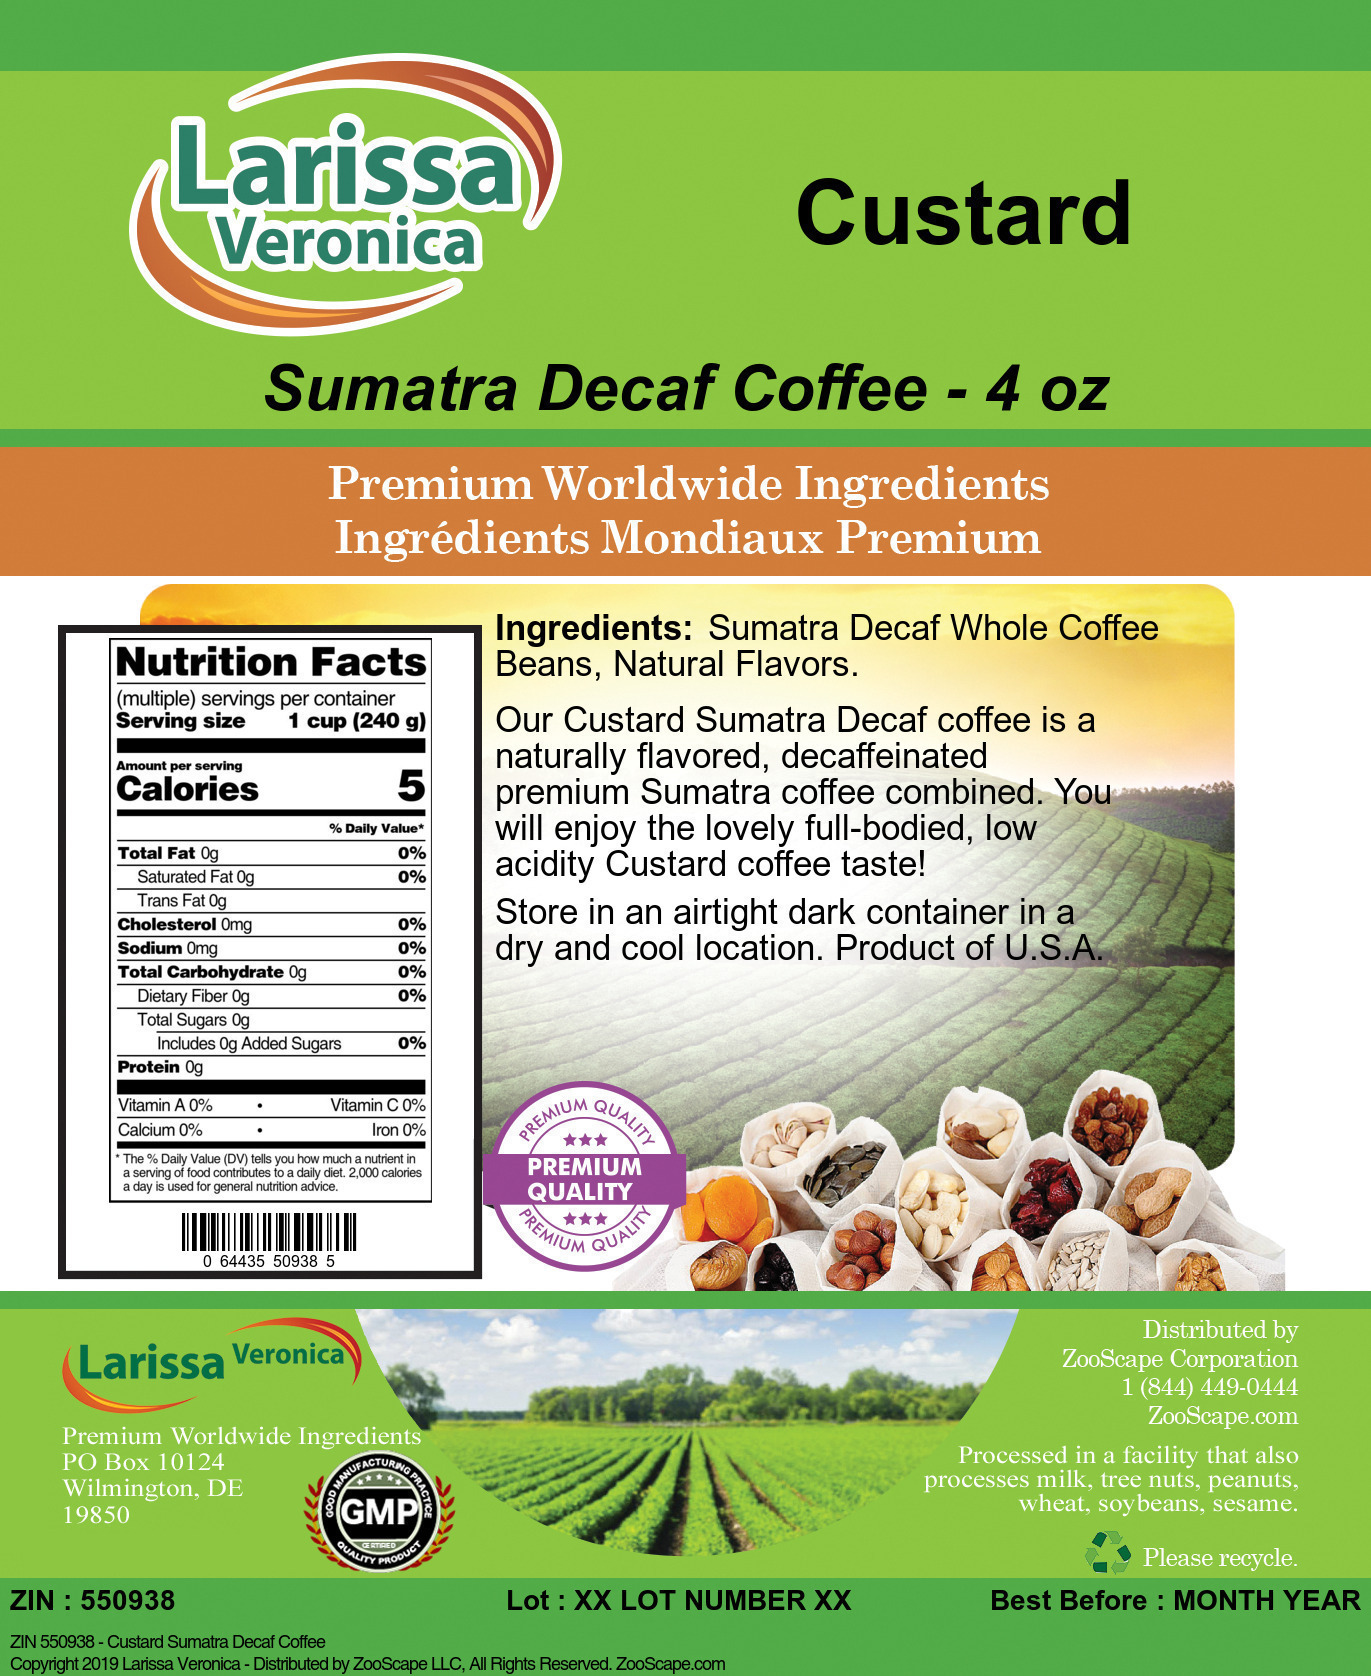 Custard Sumatra Decaf Coffee - Label